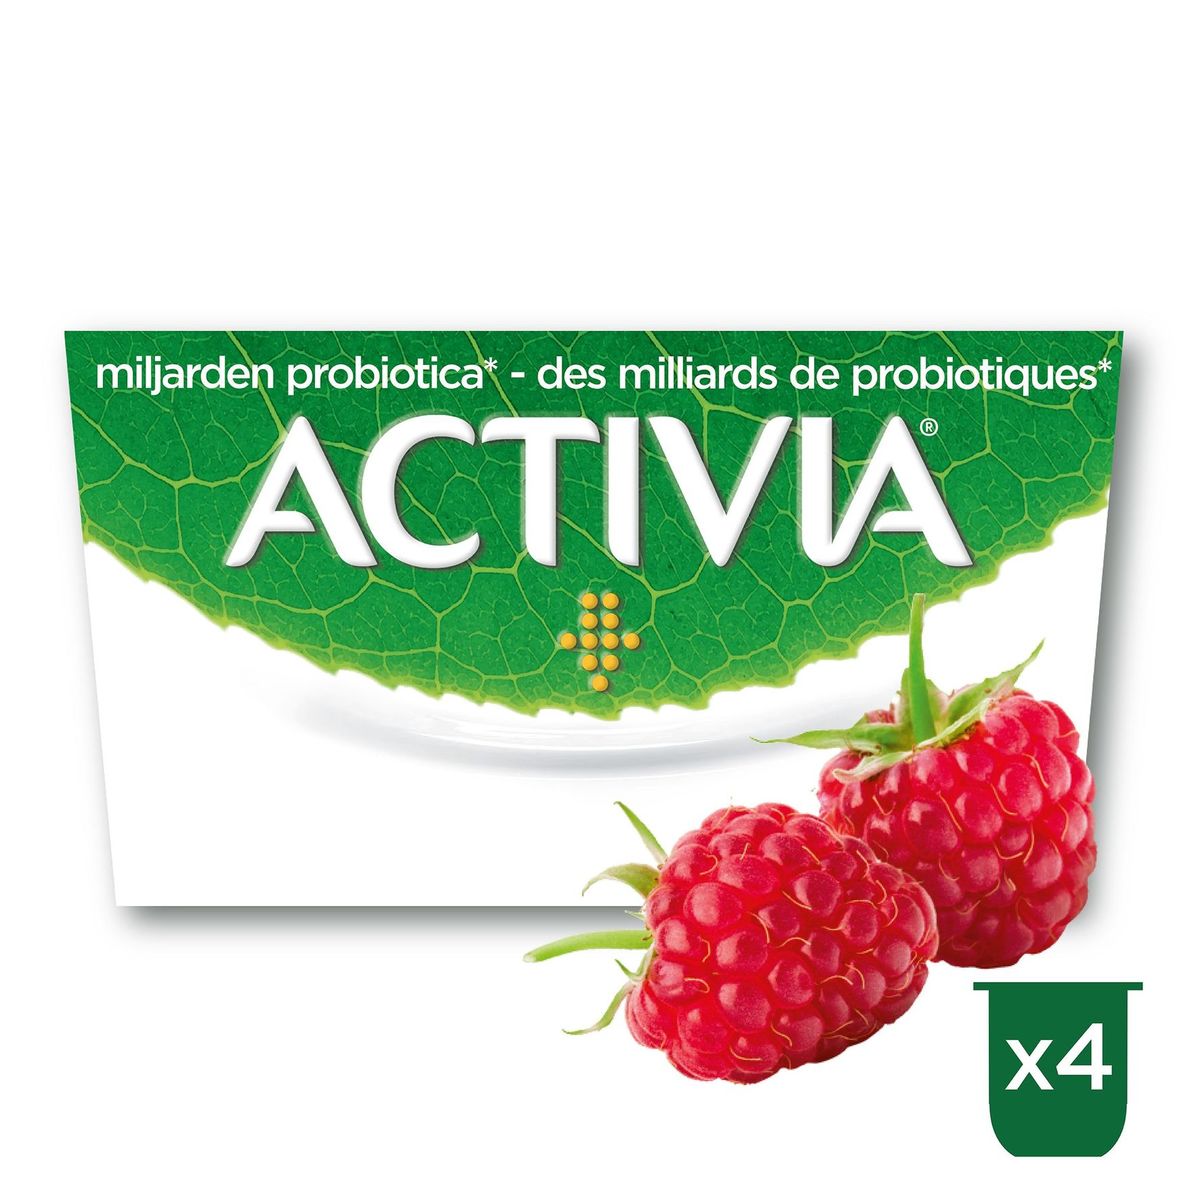 Activia Yoghurt Framboos met Probiotica 4 x 125 g